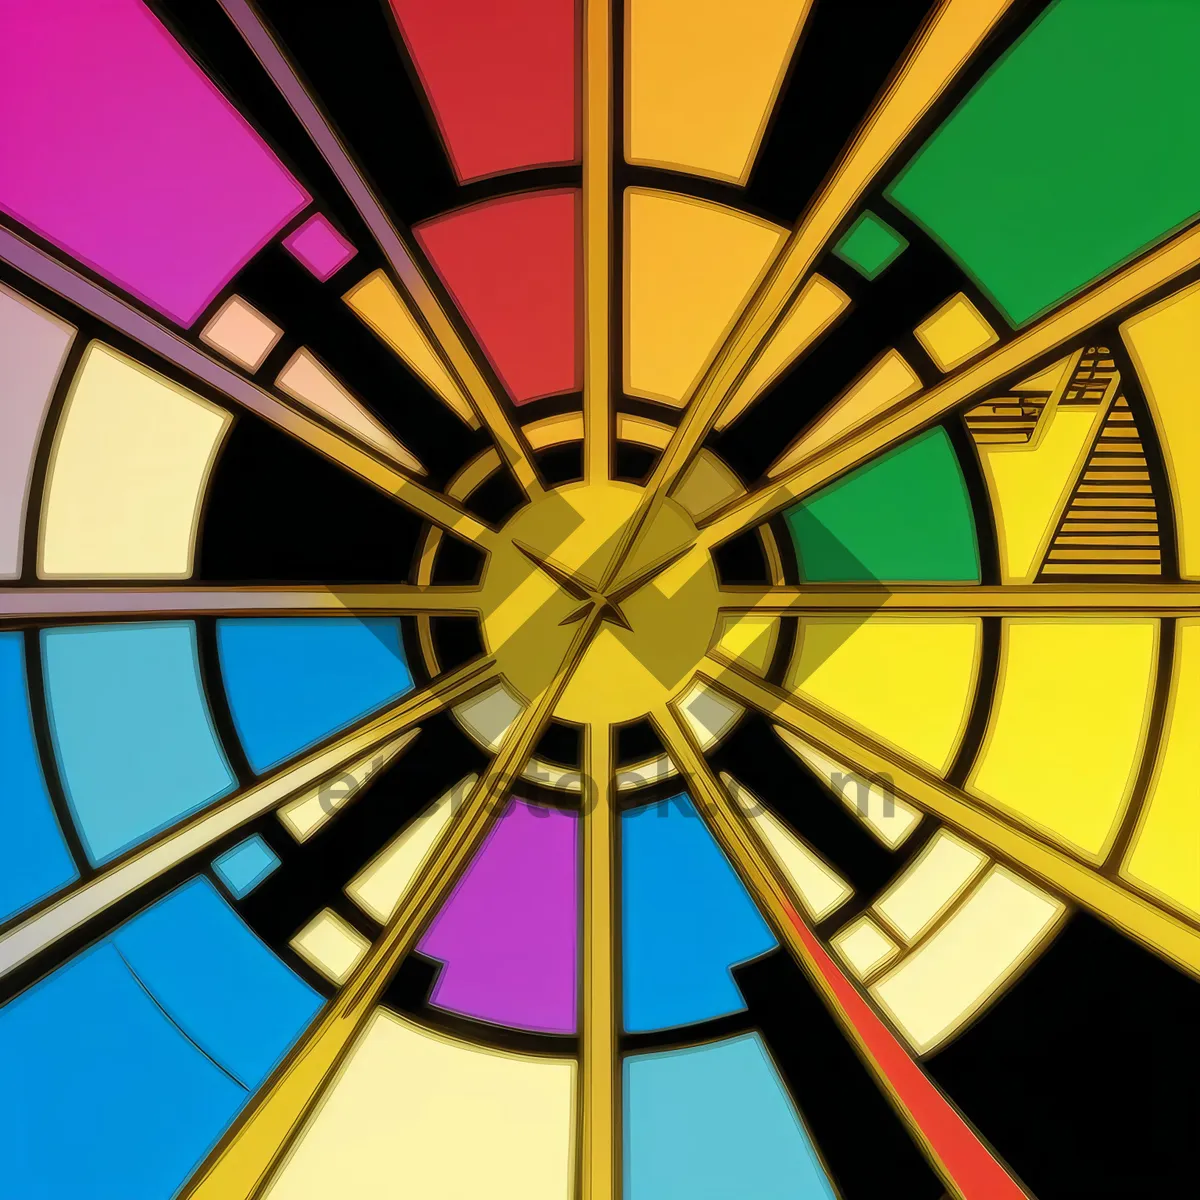 Picture of Rotating Symmetry: Ferris Wheel Steering Mechanism.